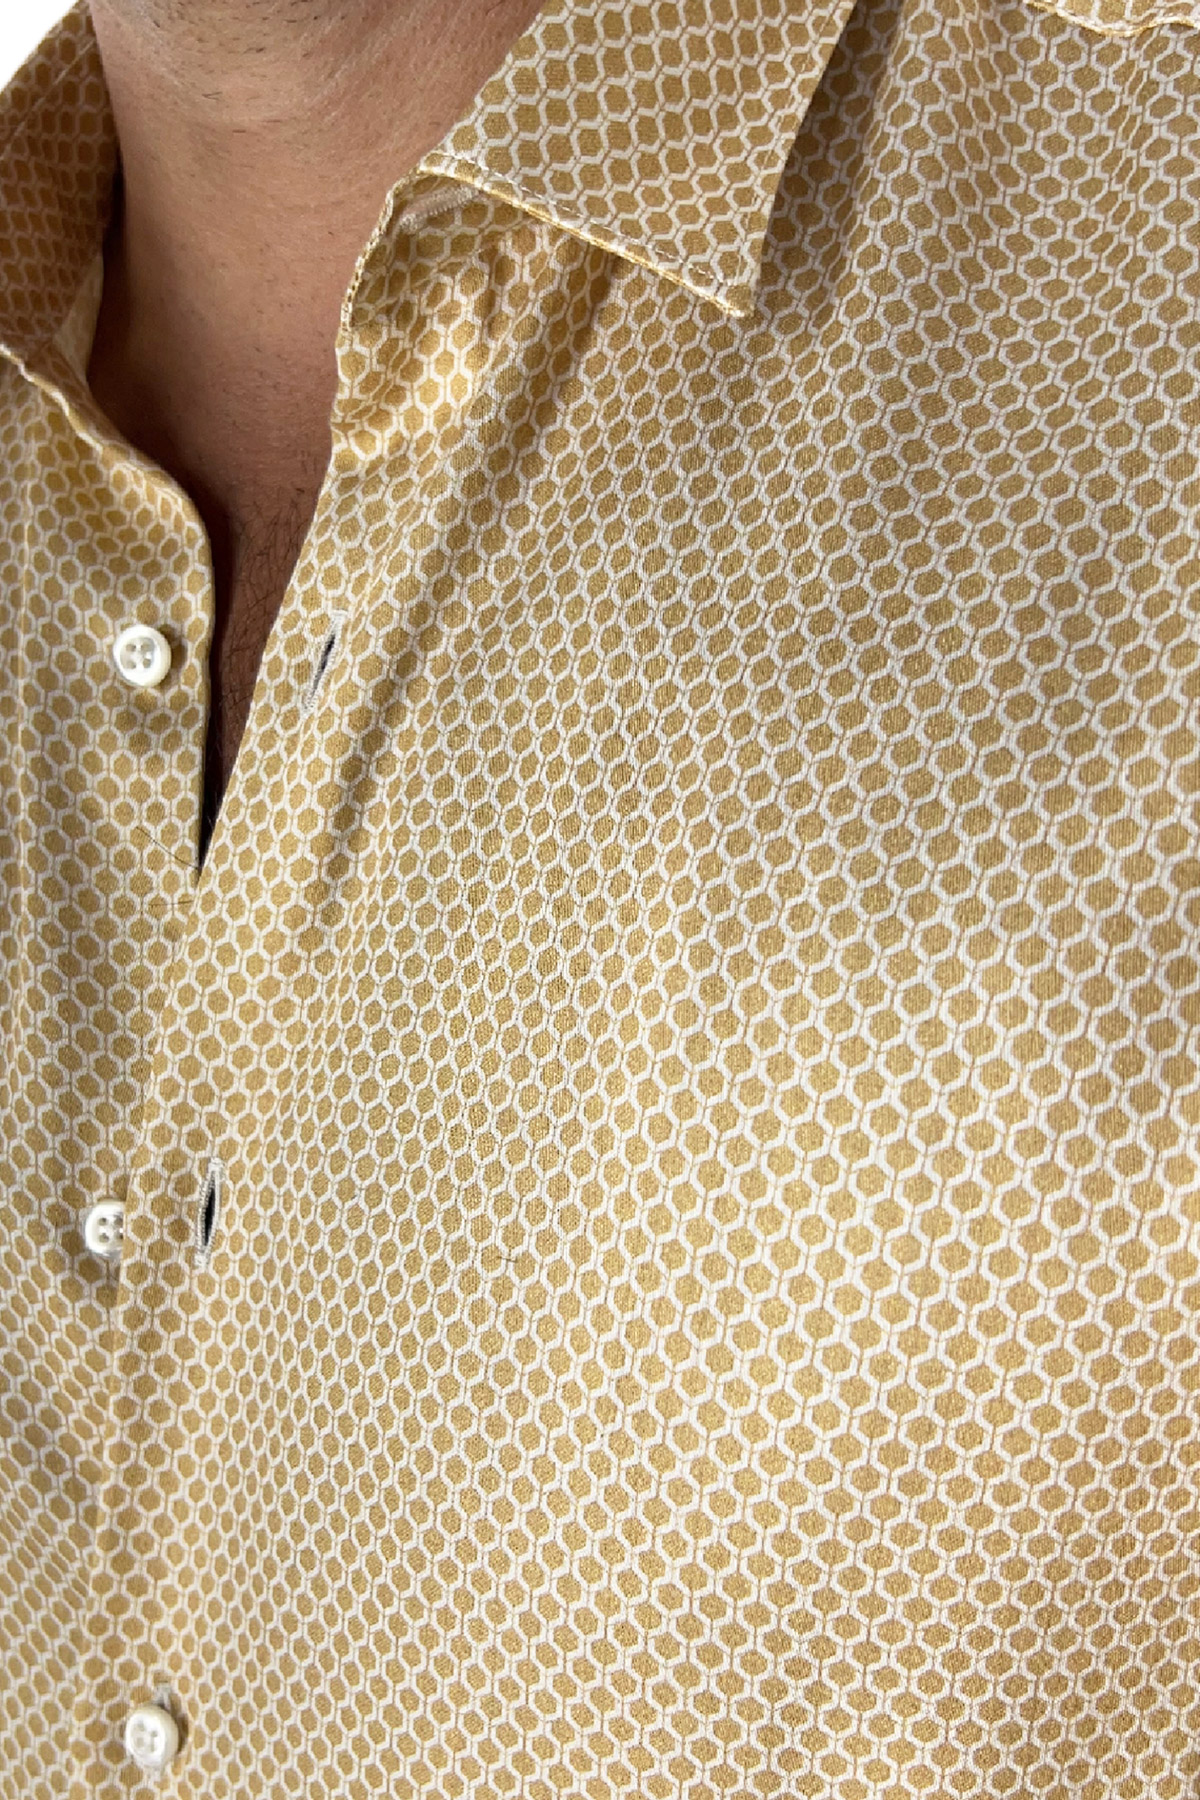 Camicia Uomo In Viscosa fantasia esagonale beige vestibilita comoda Collo Italiano